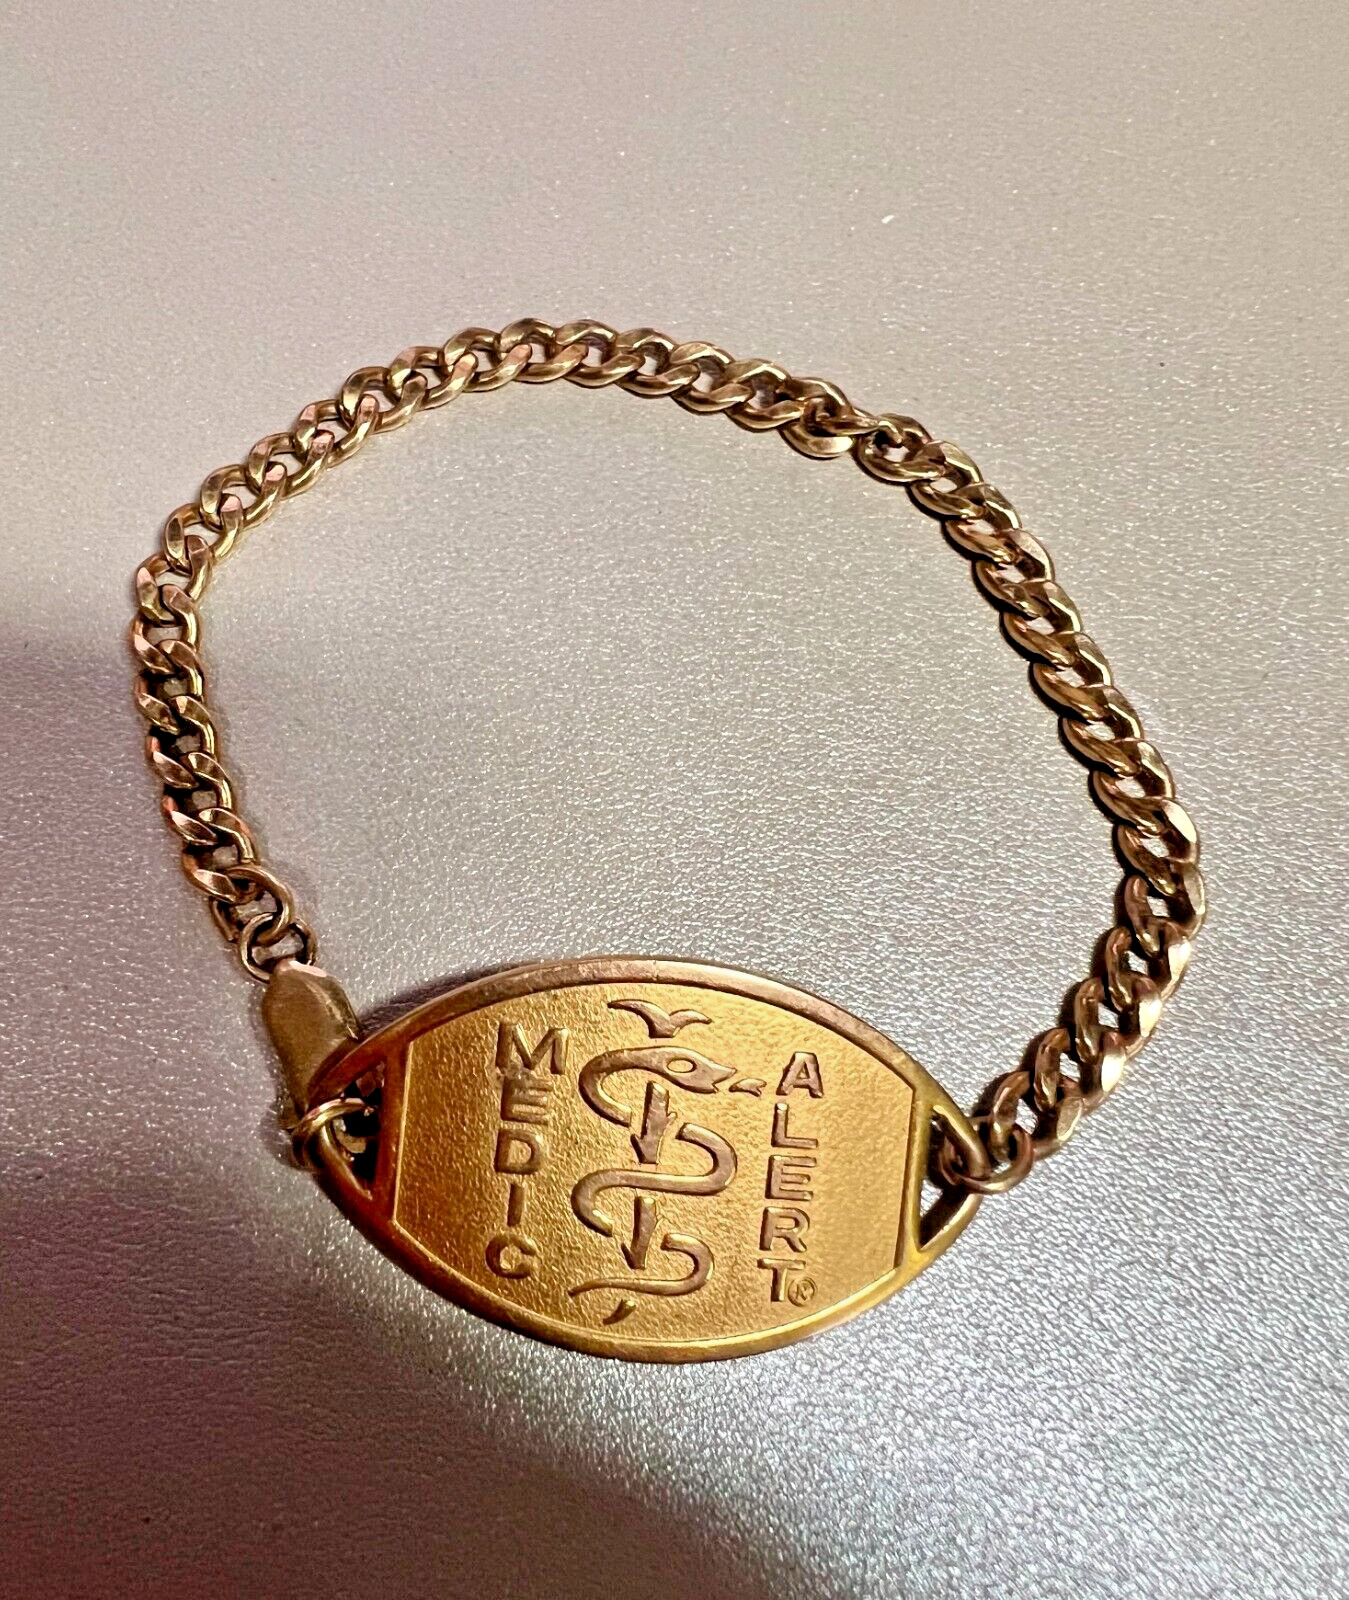 Old Vintage 10k Gold Filled Medic Alert Bracelet